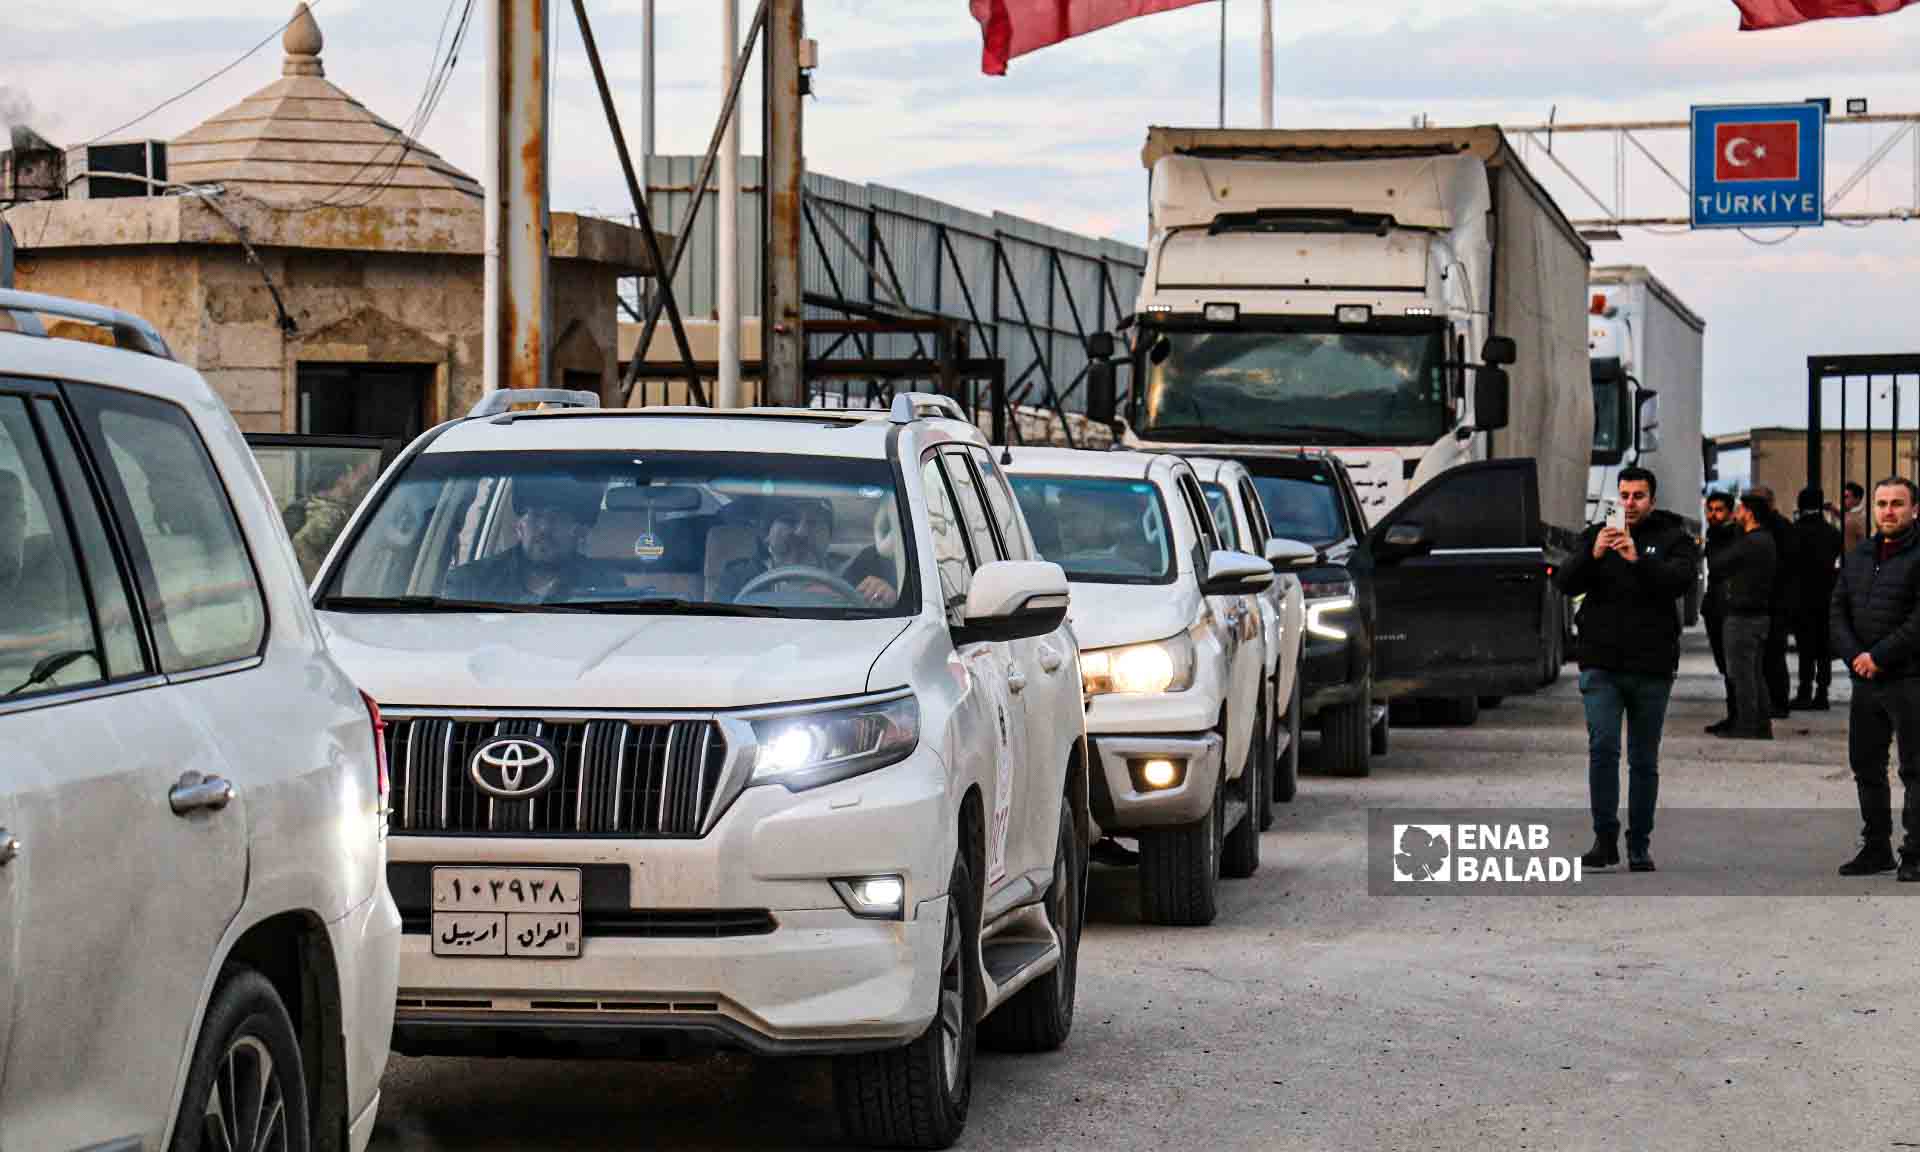 مساعدات إغاثية من "كردستان العراق" إلى مدينة جنديرس بريف حلب تدخل عبر معبر باب السلامة  - 10شباط 2023 (عنب بلدي/ ديان جنباز)